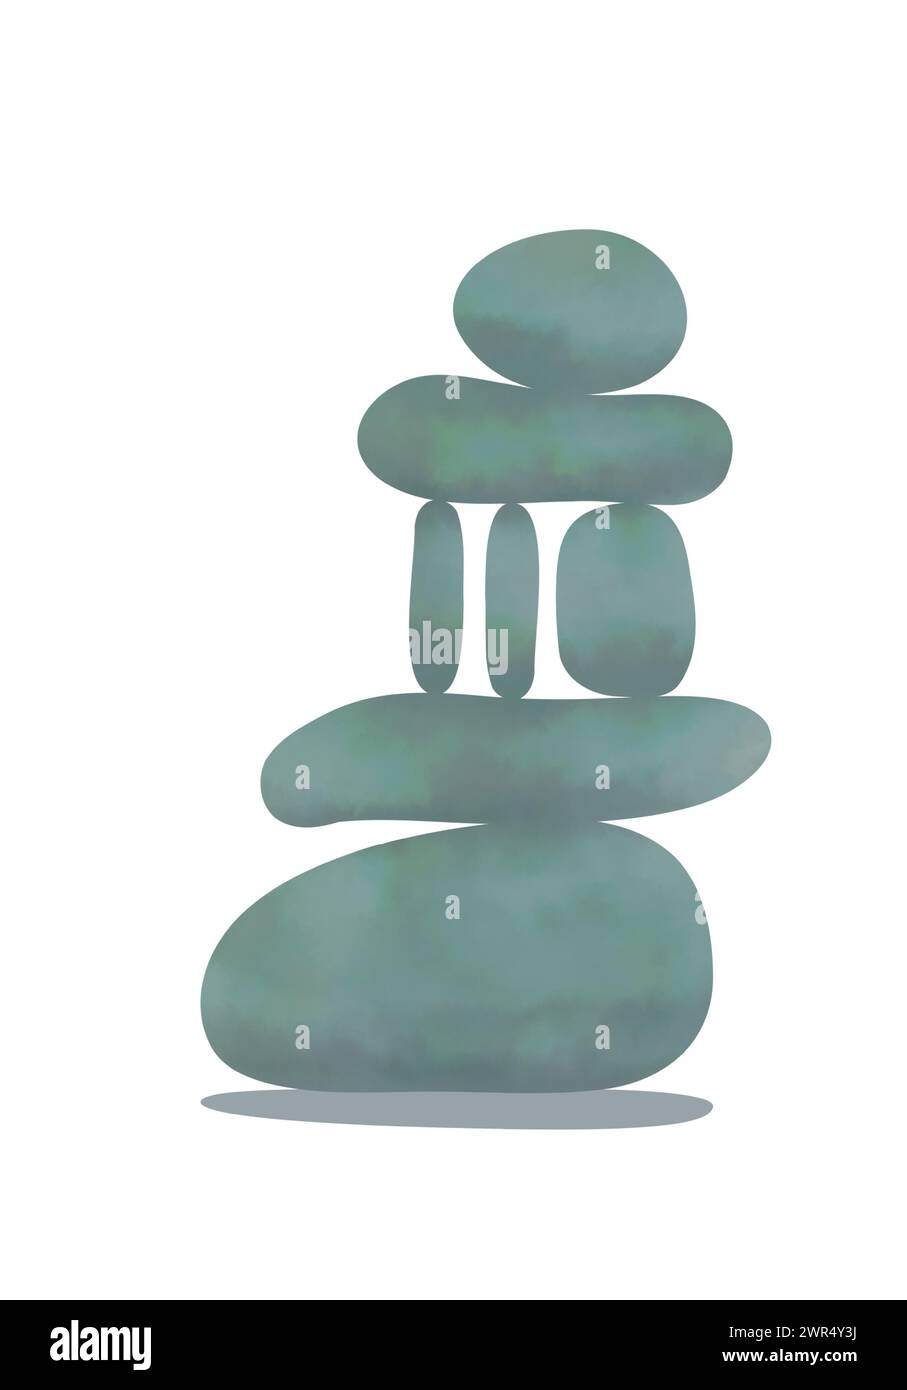 Pietre Zen, forma geometrica creativa piramide di ciottoli isolata su sfondo bianco. Disegno a colori delle rocce del centro benessere. Concetto di equilibrio e armonia Illustrazione Vettoriale